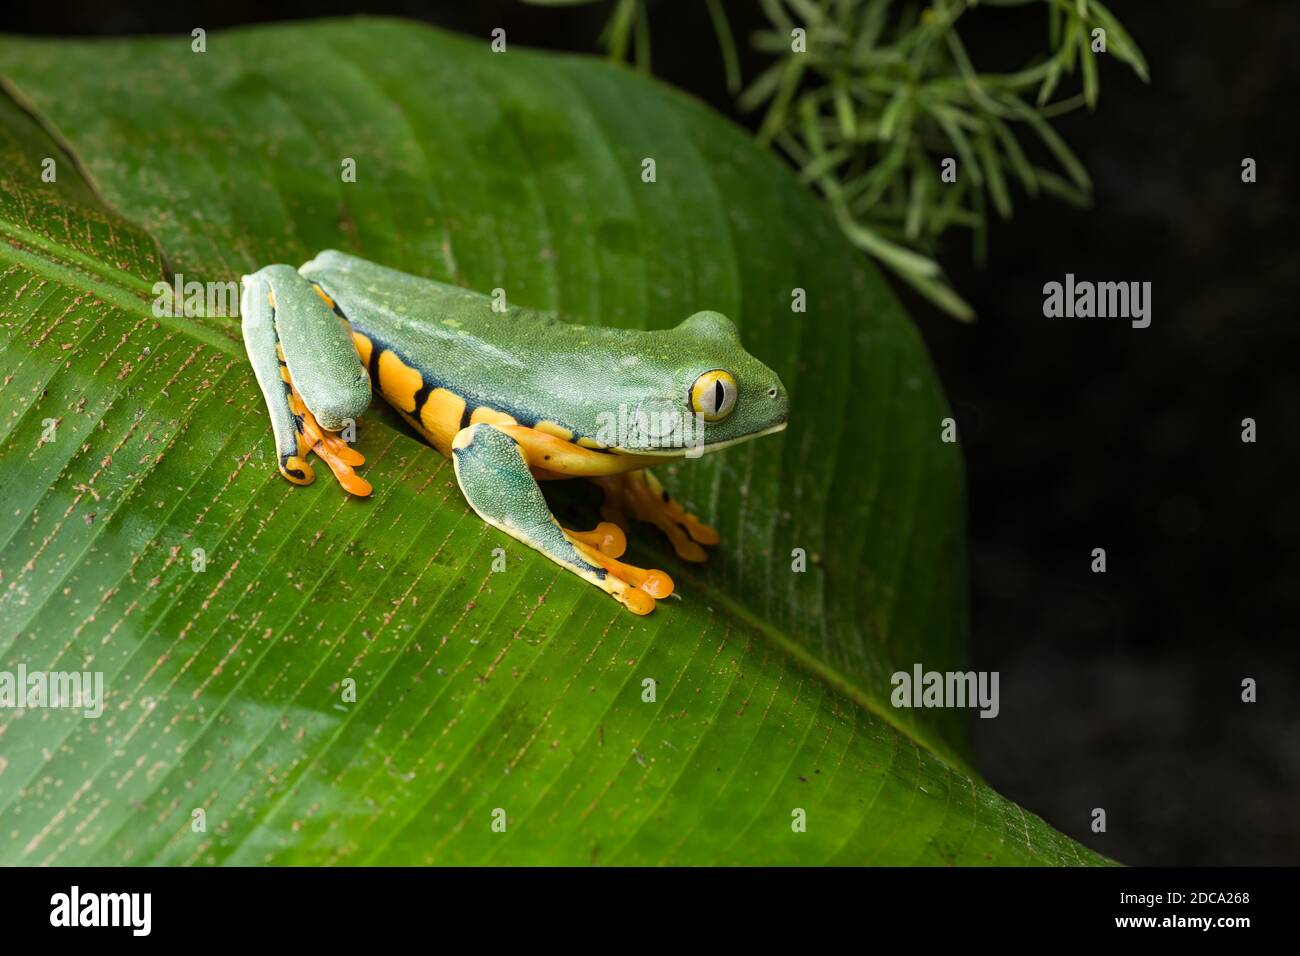 La splendida rana di foglie, Cruziohyla calcarifer, si trova in foreste pluviali umide e neotropiche dal sud della Costa Rica al nord dell'Ecuador. Foto Stock